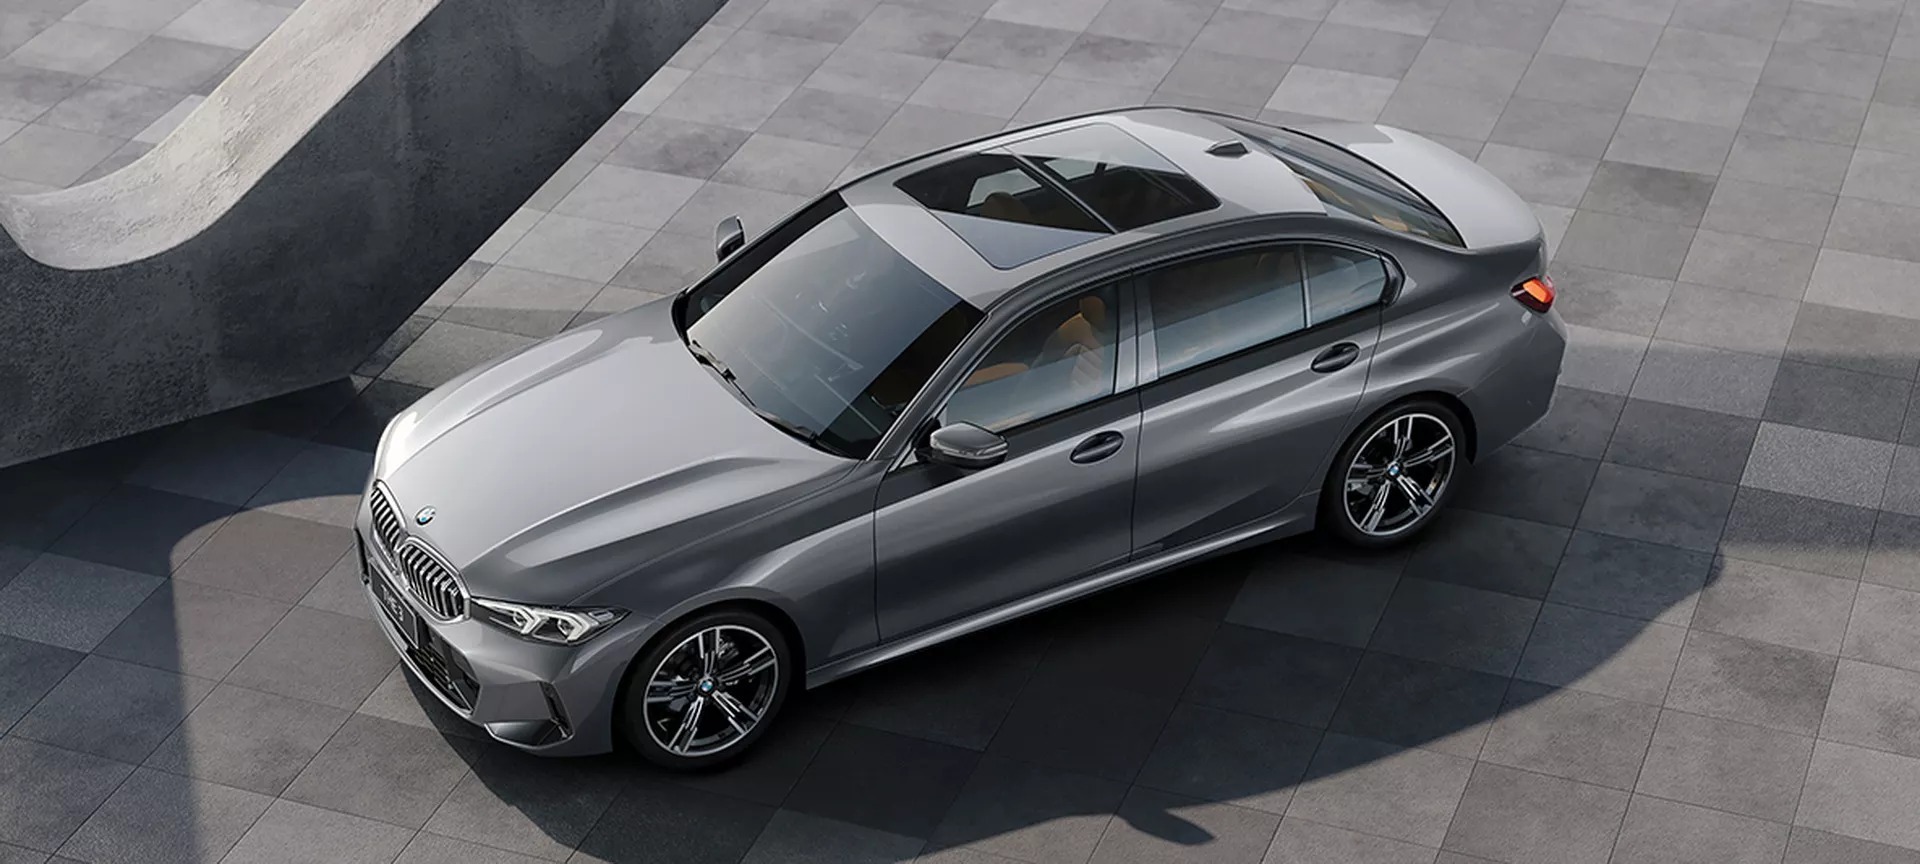 Ra mắt BMW 3-Series kéo dài: Nhìn mắt thường khó tìm ra sự khác biệt - Ảnh 4.